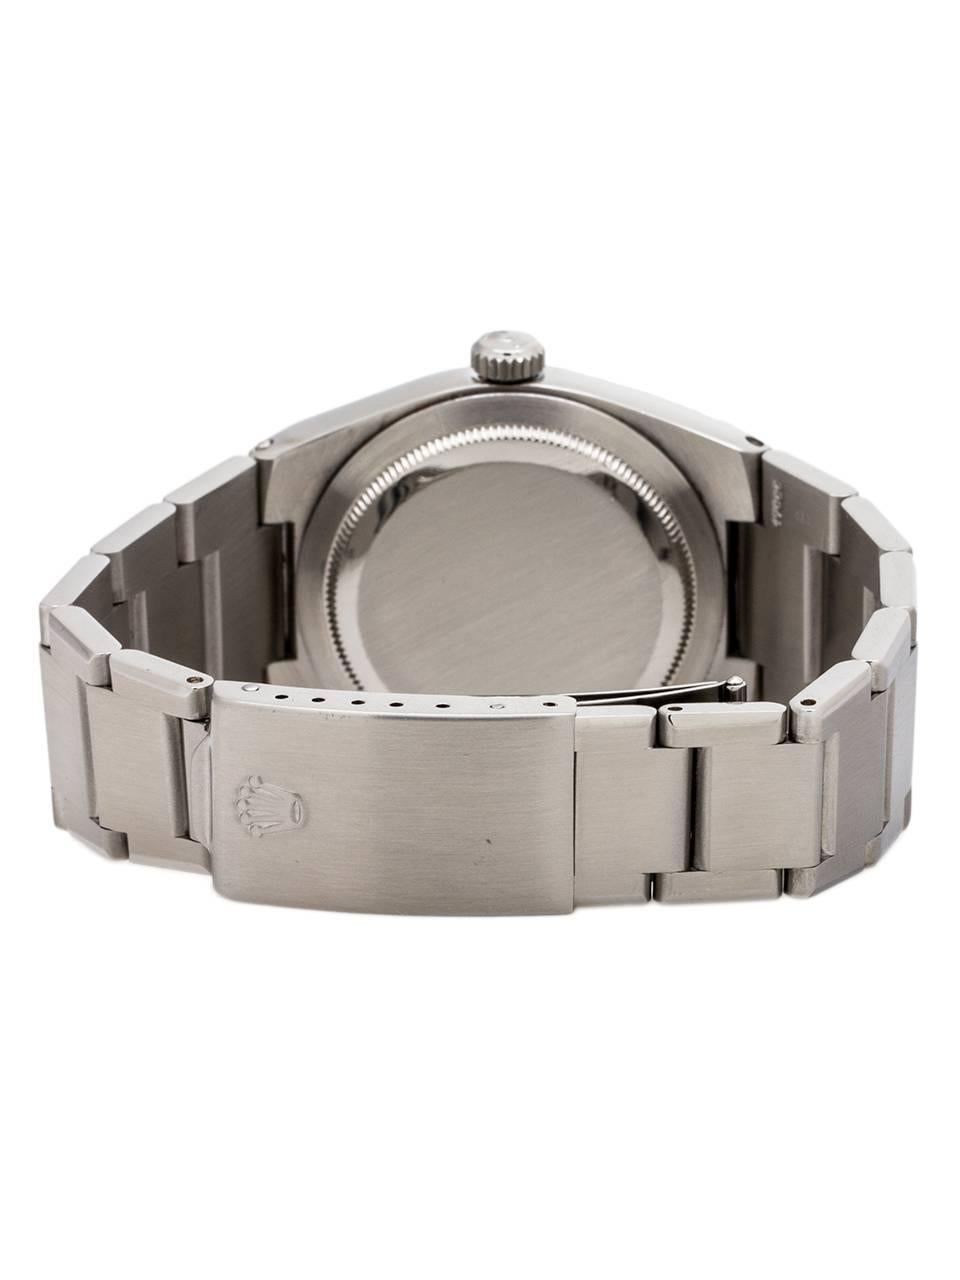 Men's Rolex Stainless Steel Datejust Oyster Quartz wristwatch Ref 17000, circa 1978